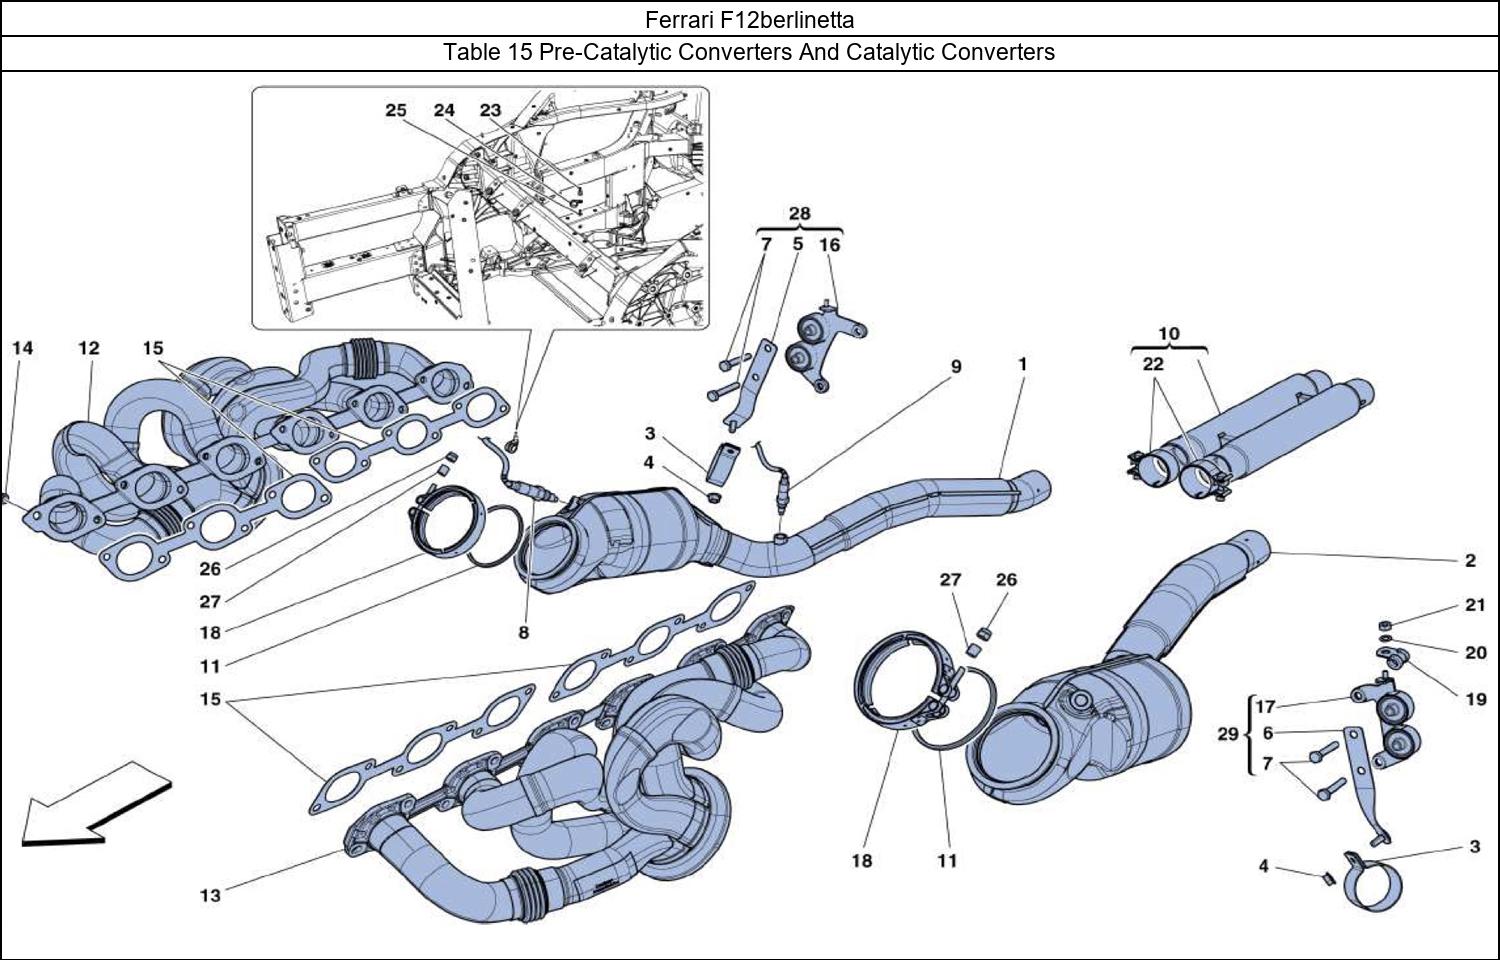 Ferrari Parts Ferrari F12berlinetta Table 15 Pre-Catalytic Converters And Catalytic Converters